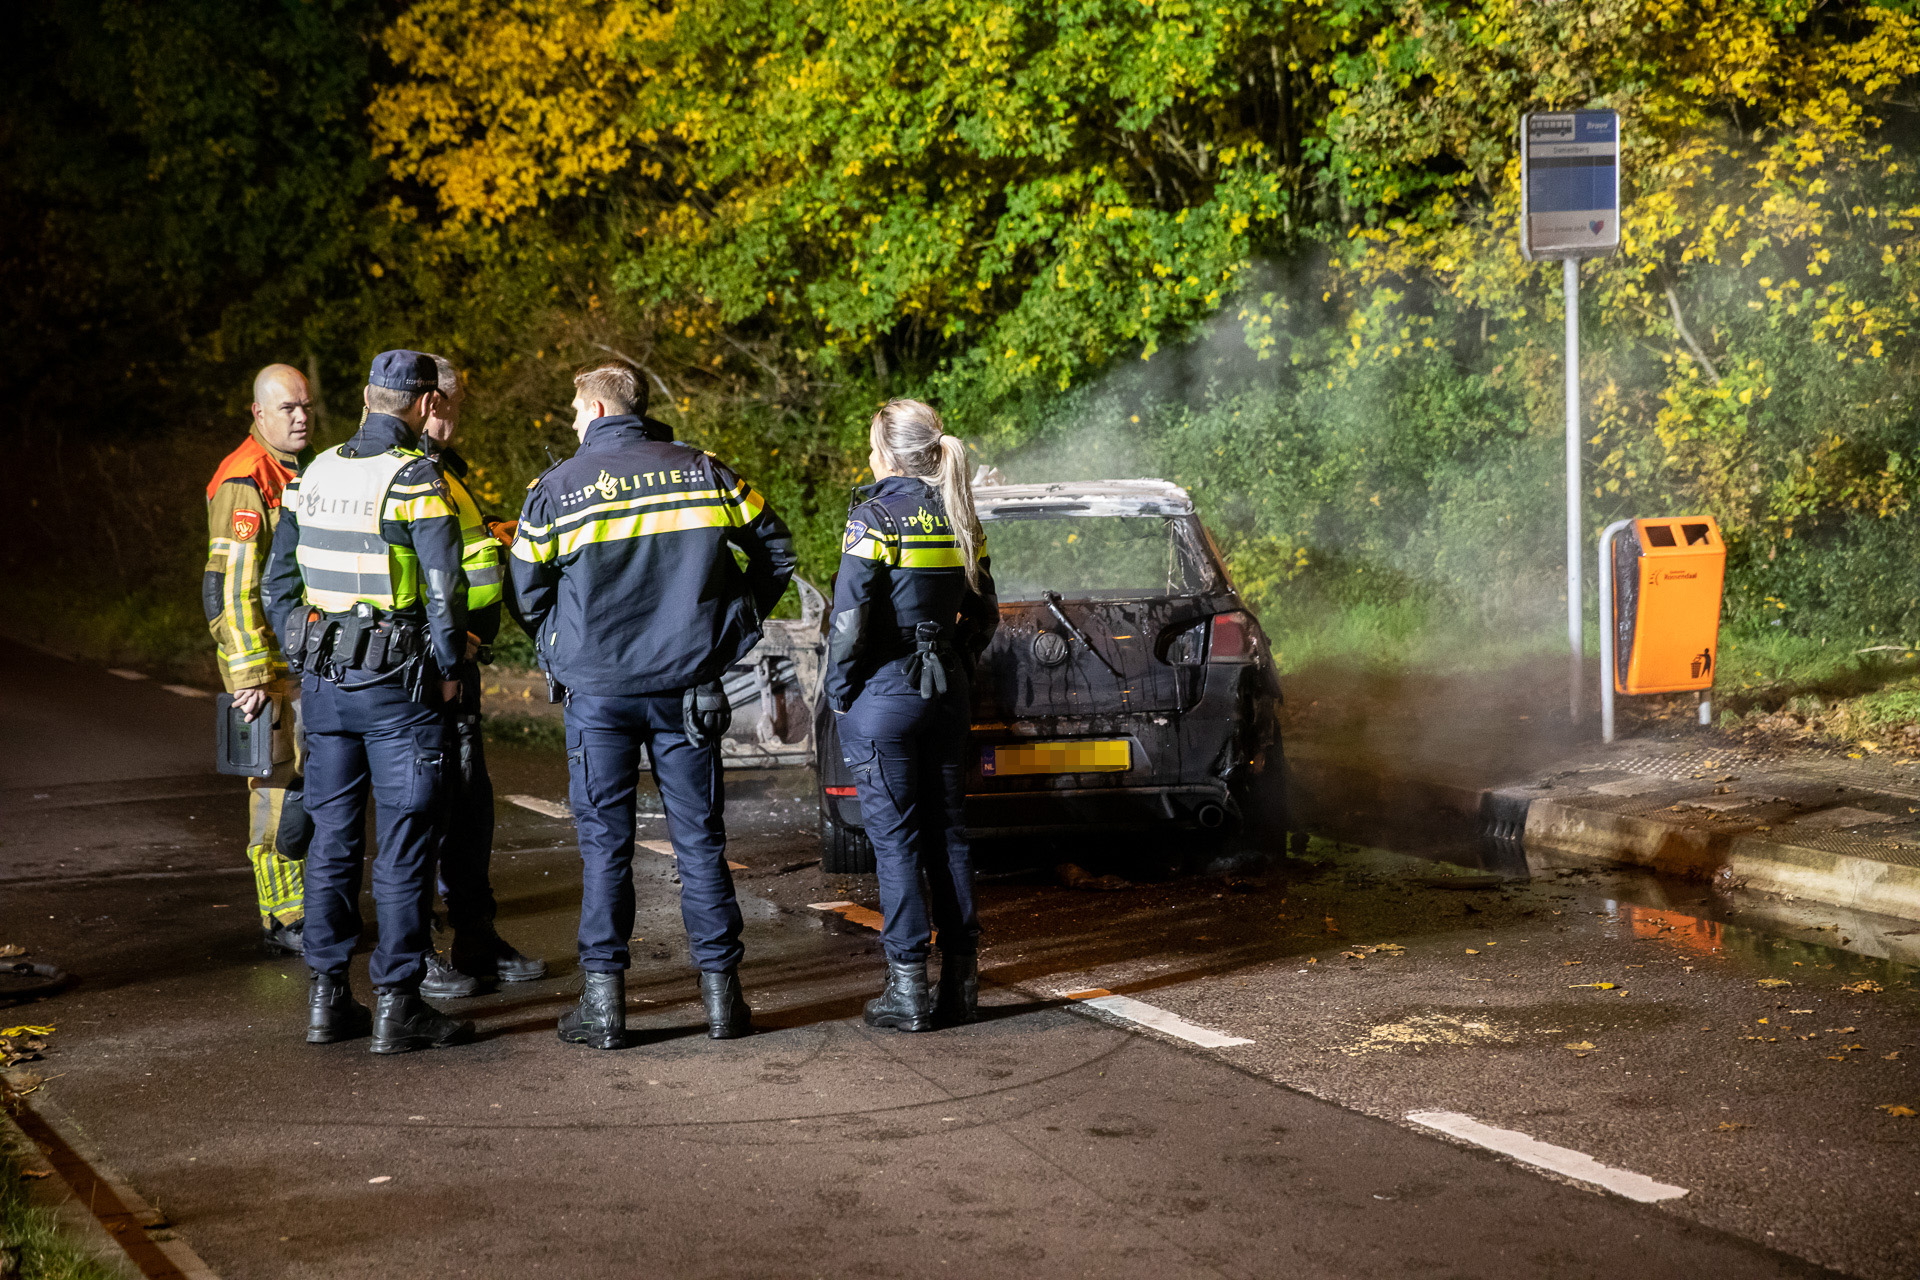 Auto volledig uitgebrand in Roosendaal, bestuurder spoorloos